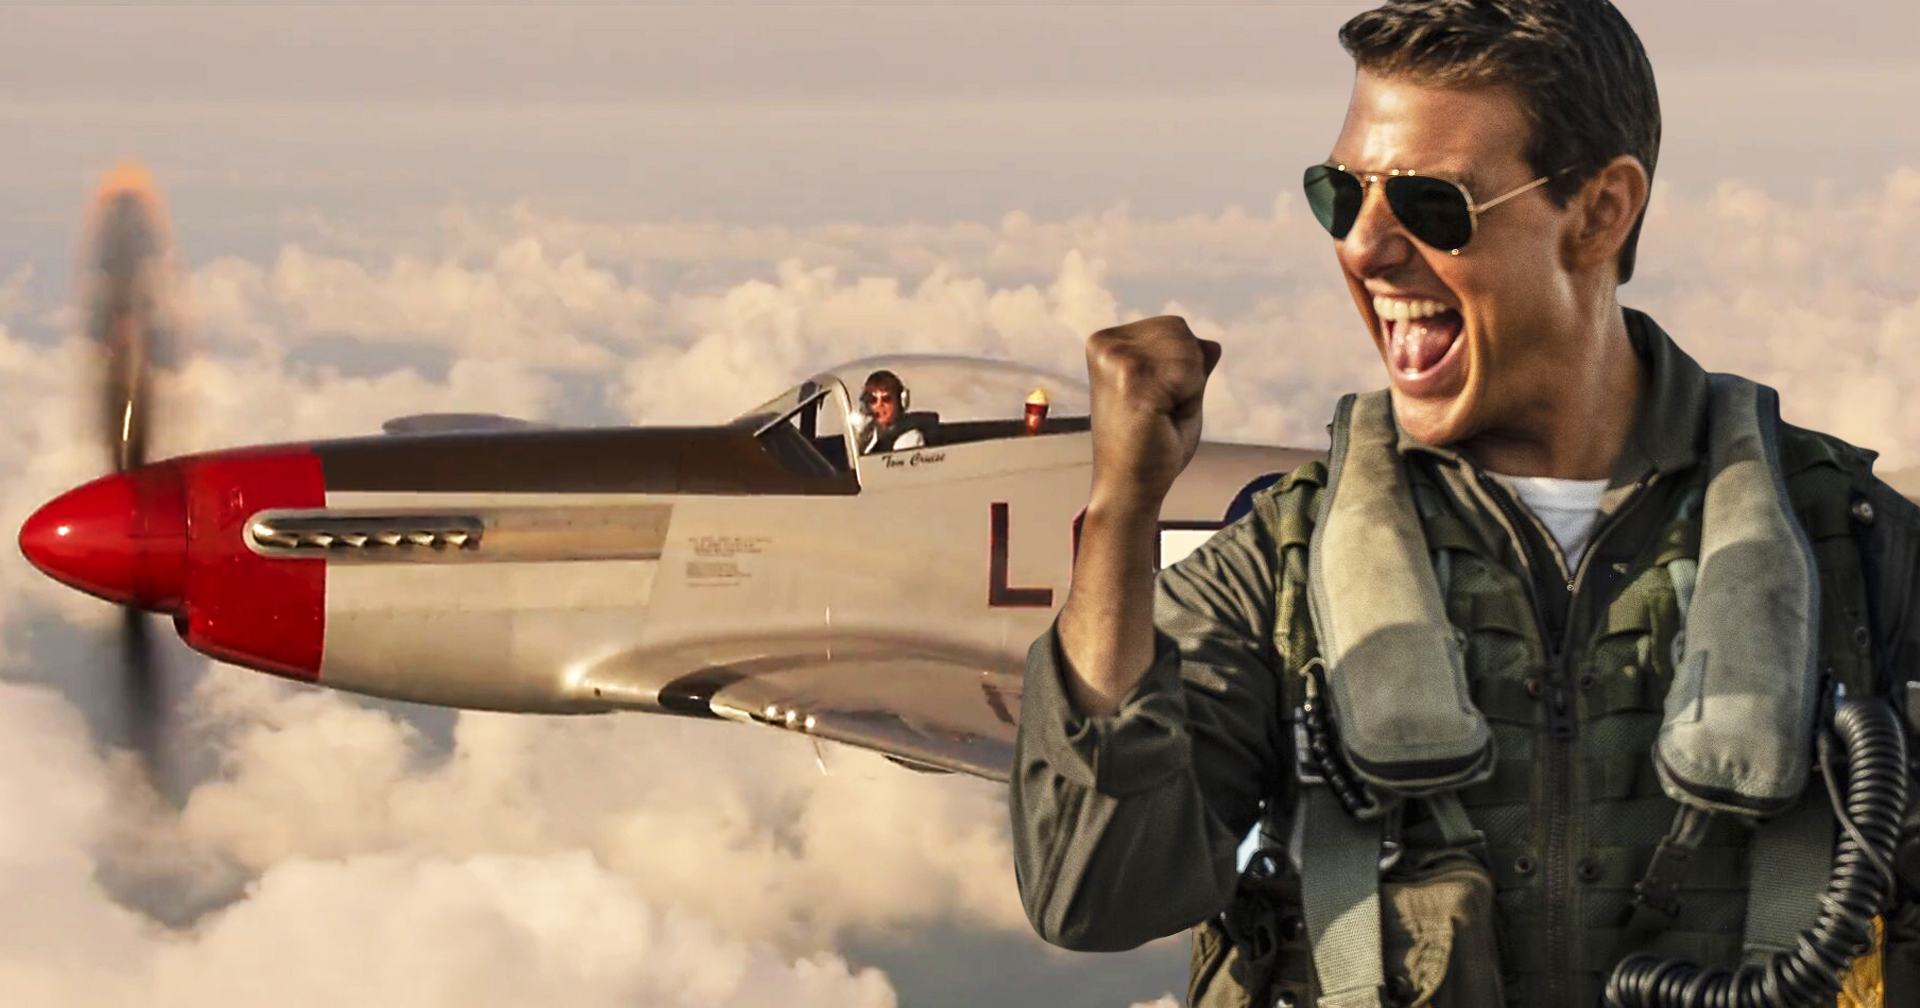 ล้ำไปอีก! Tom Cruise กล่าวขอบคุณขณะขับเครื่องบิน หลังคว้ารางวัลการแสดงยอดเยี่ยมจาก MTV